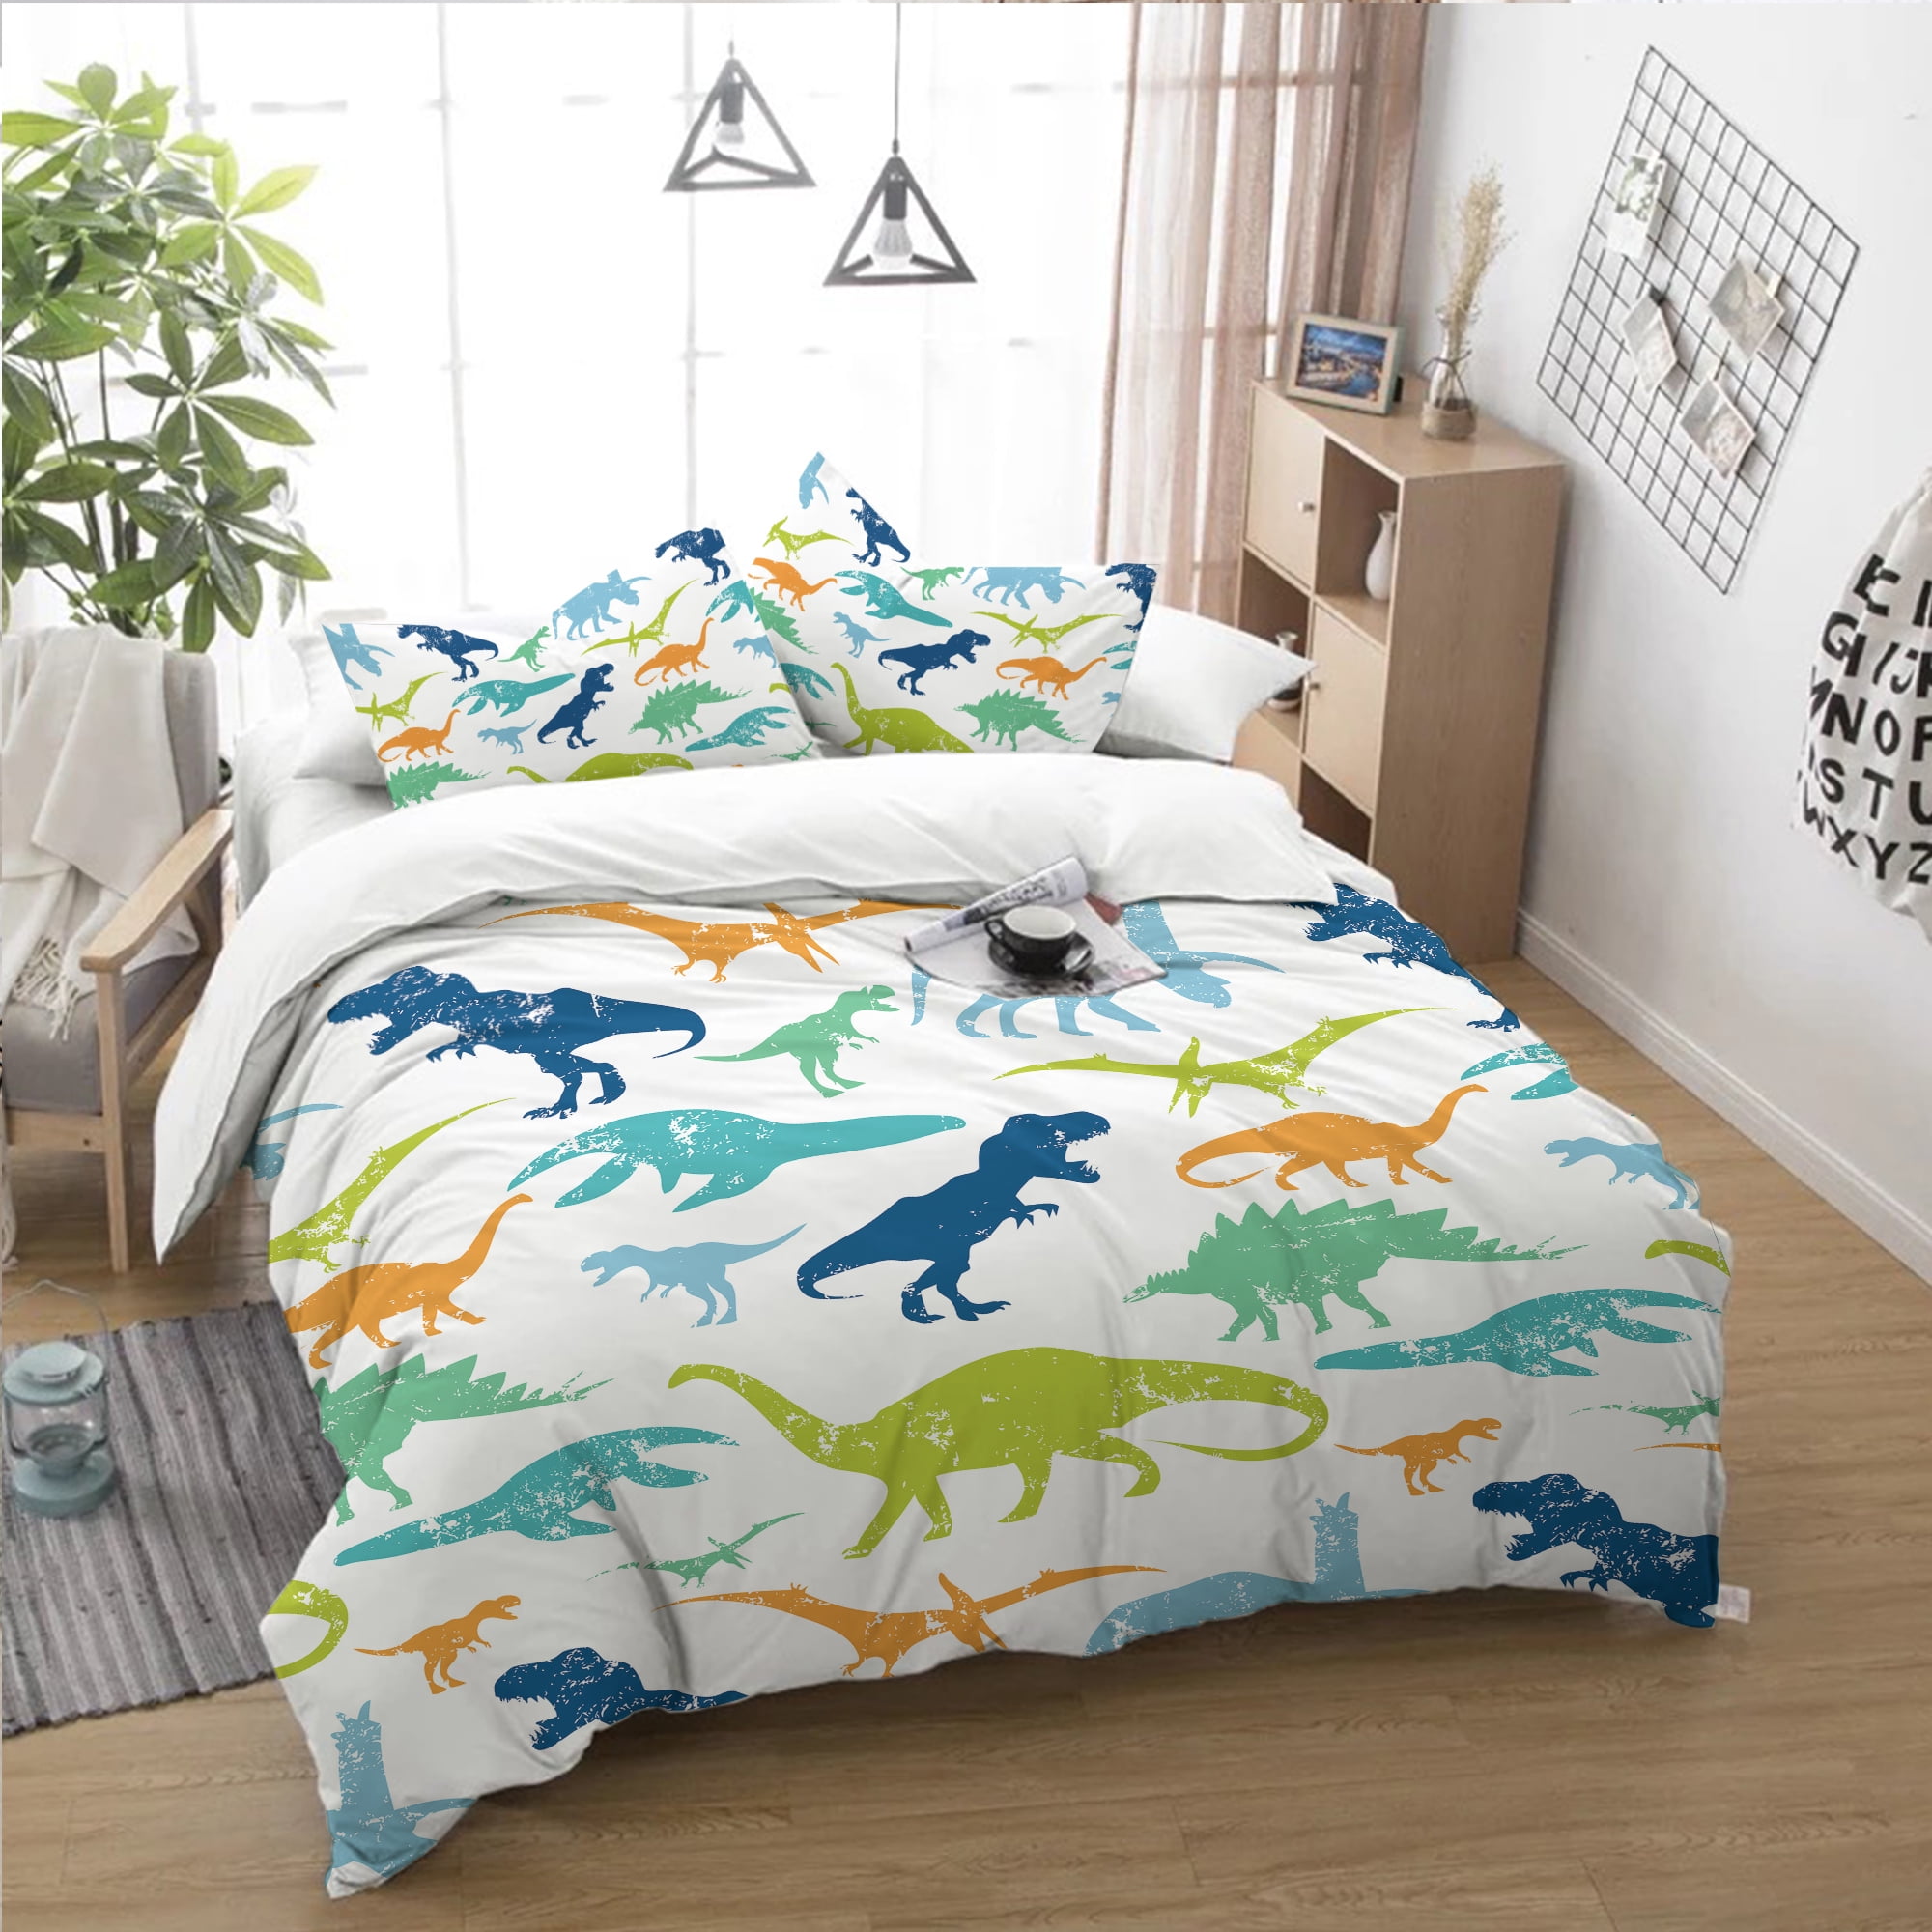 Details about   Five Piece Reversible Dinosaur Comforter Multicolor Bedding Set Twin  